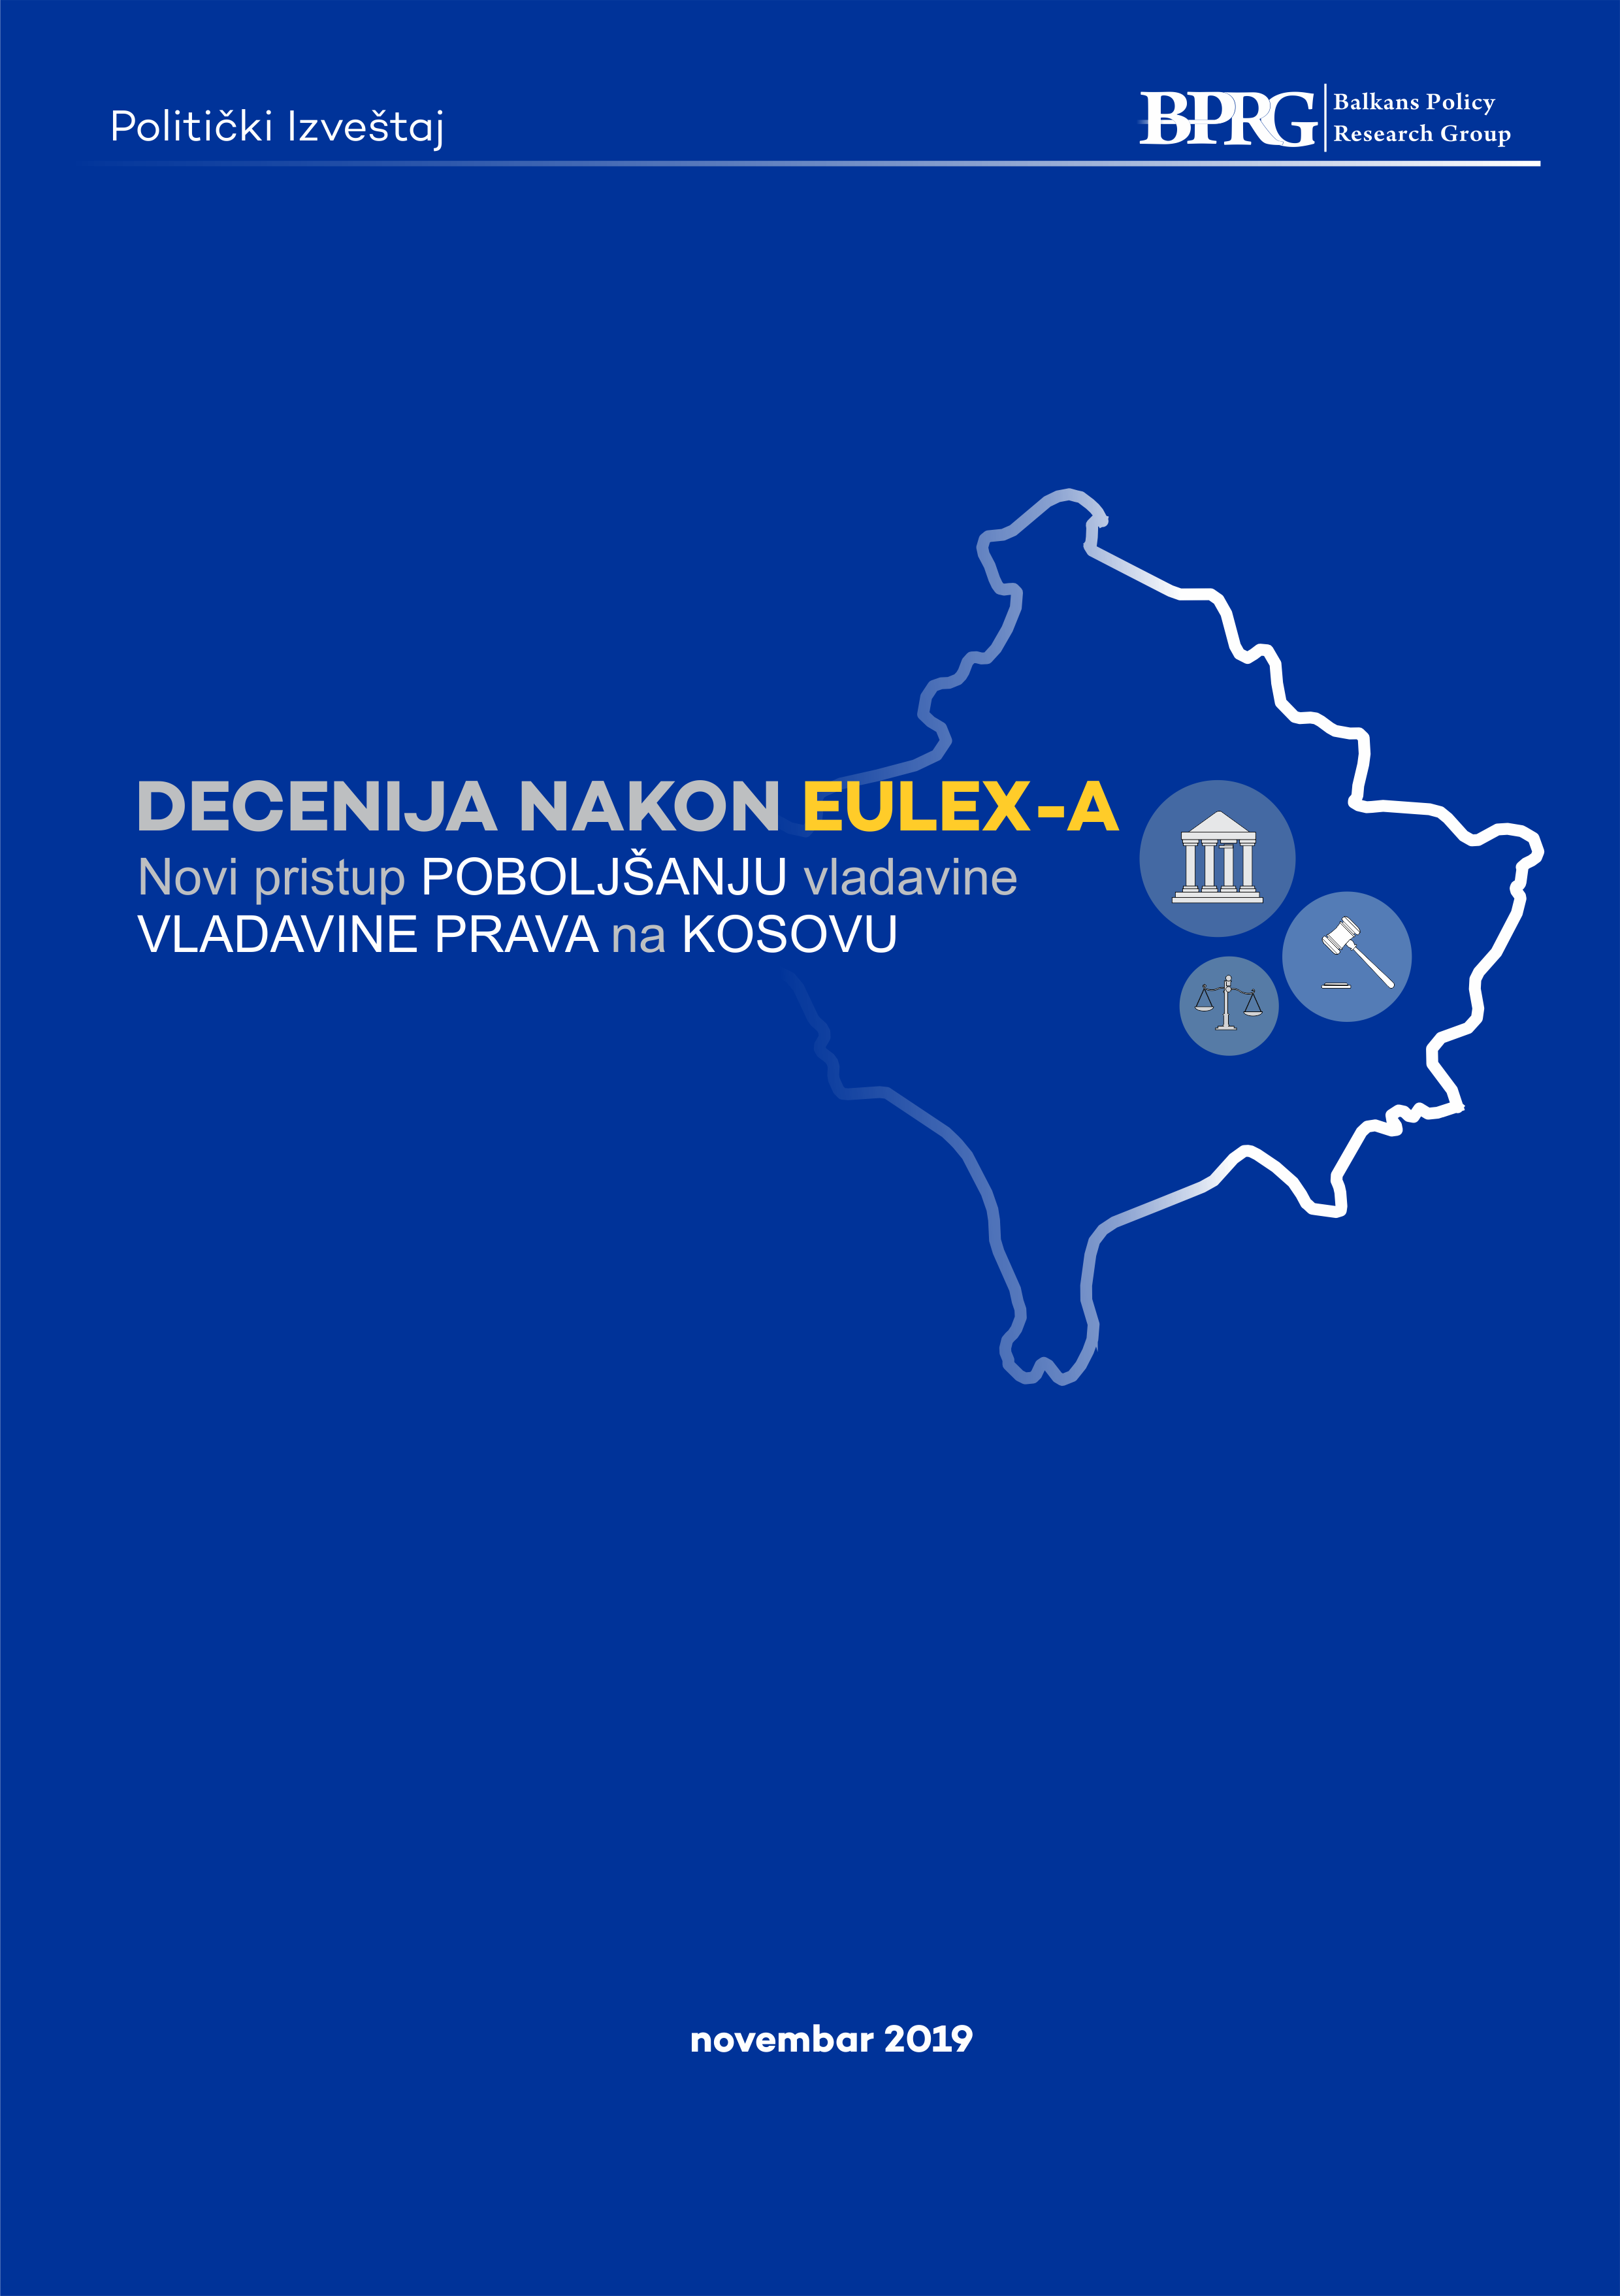 Decenija nakon EULEX-a: Novi Pristup Poboljšanju Vladavine Prava na Kosovu